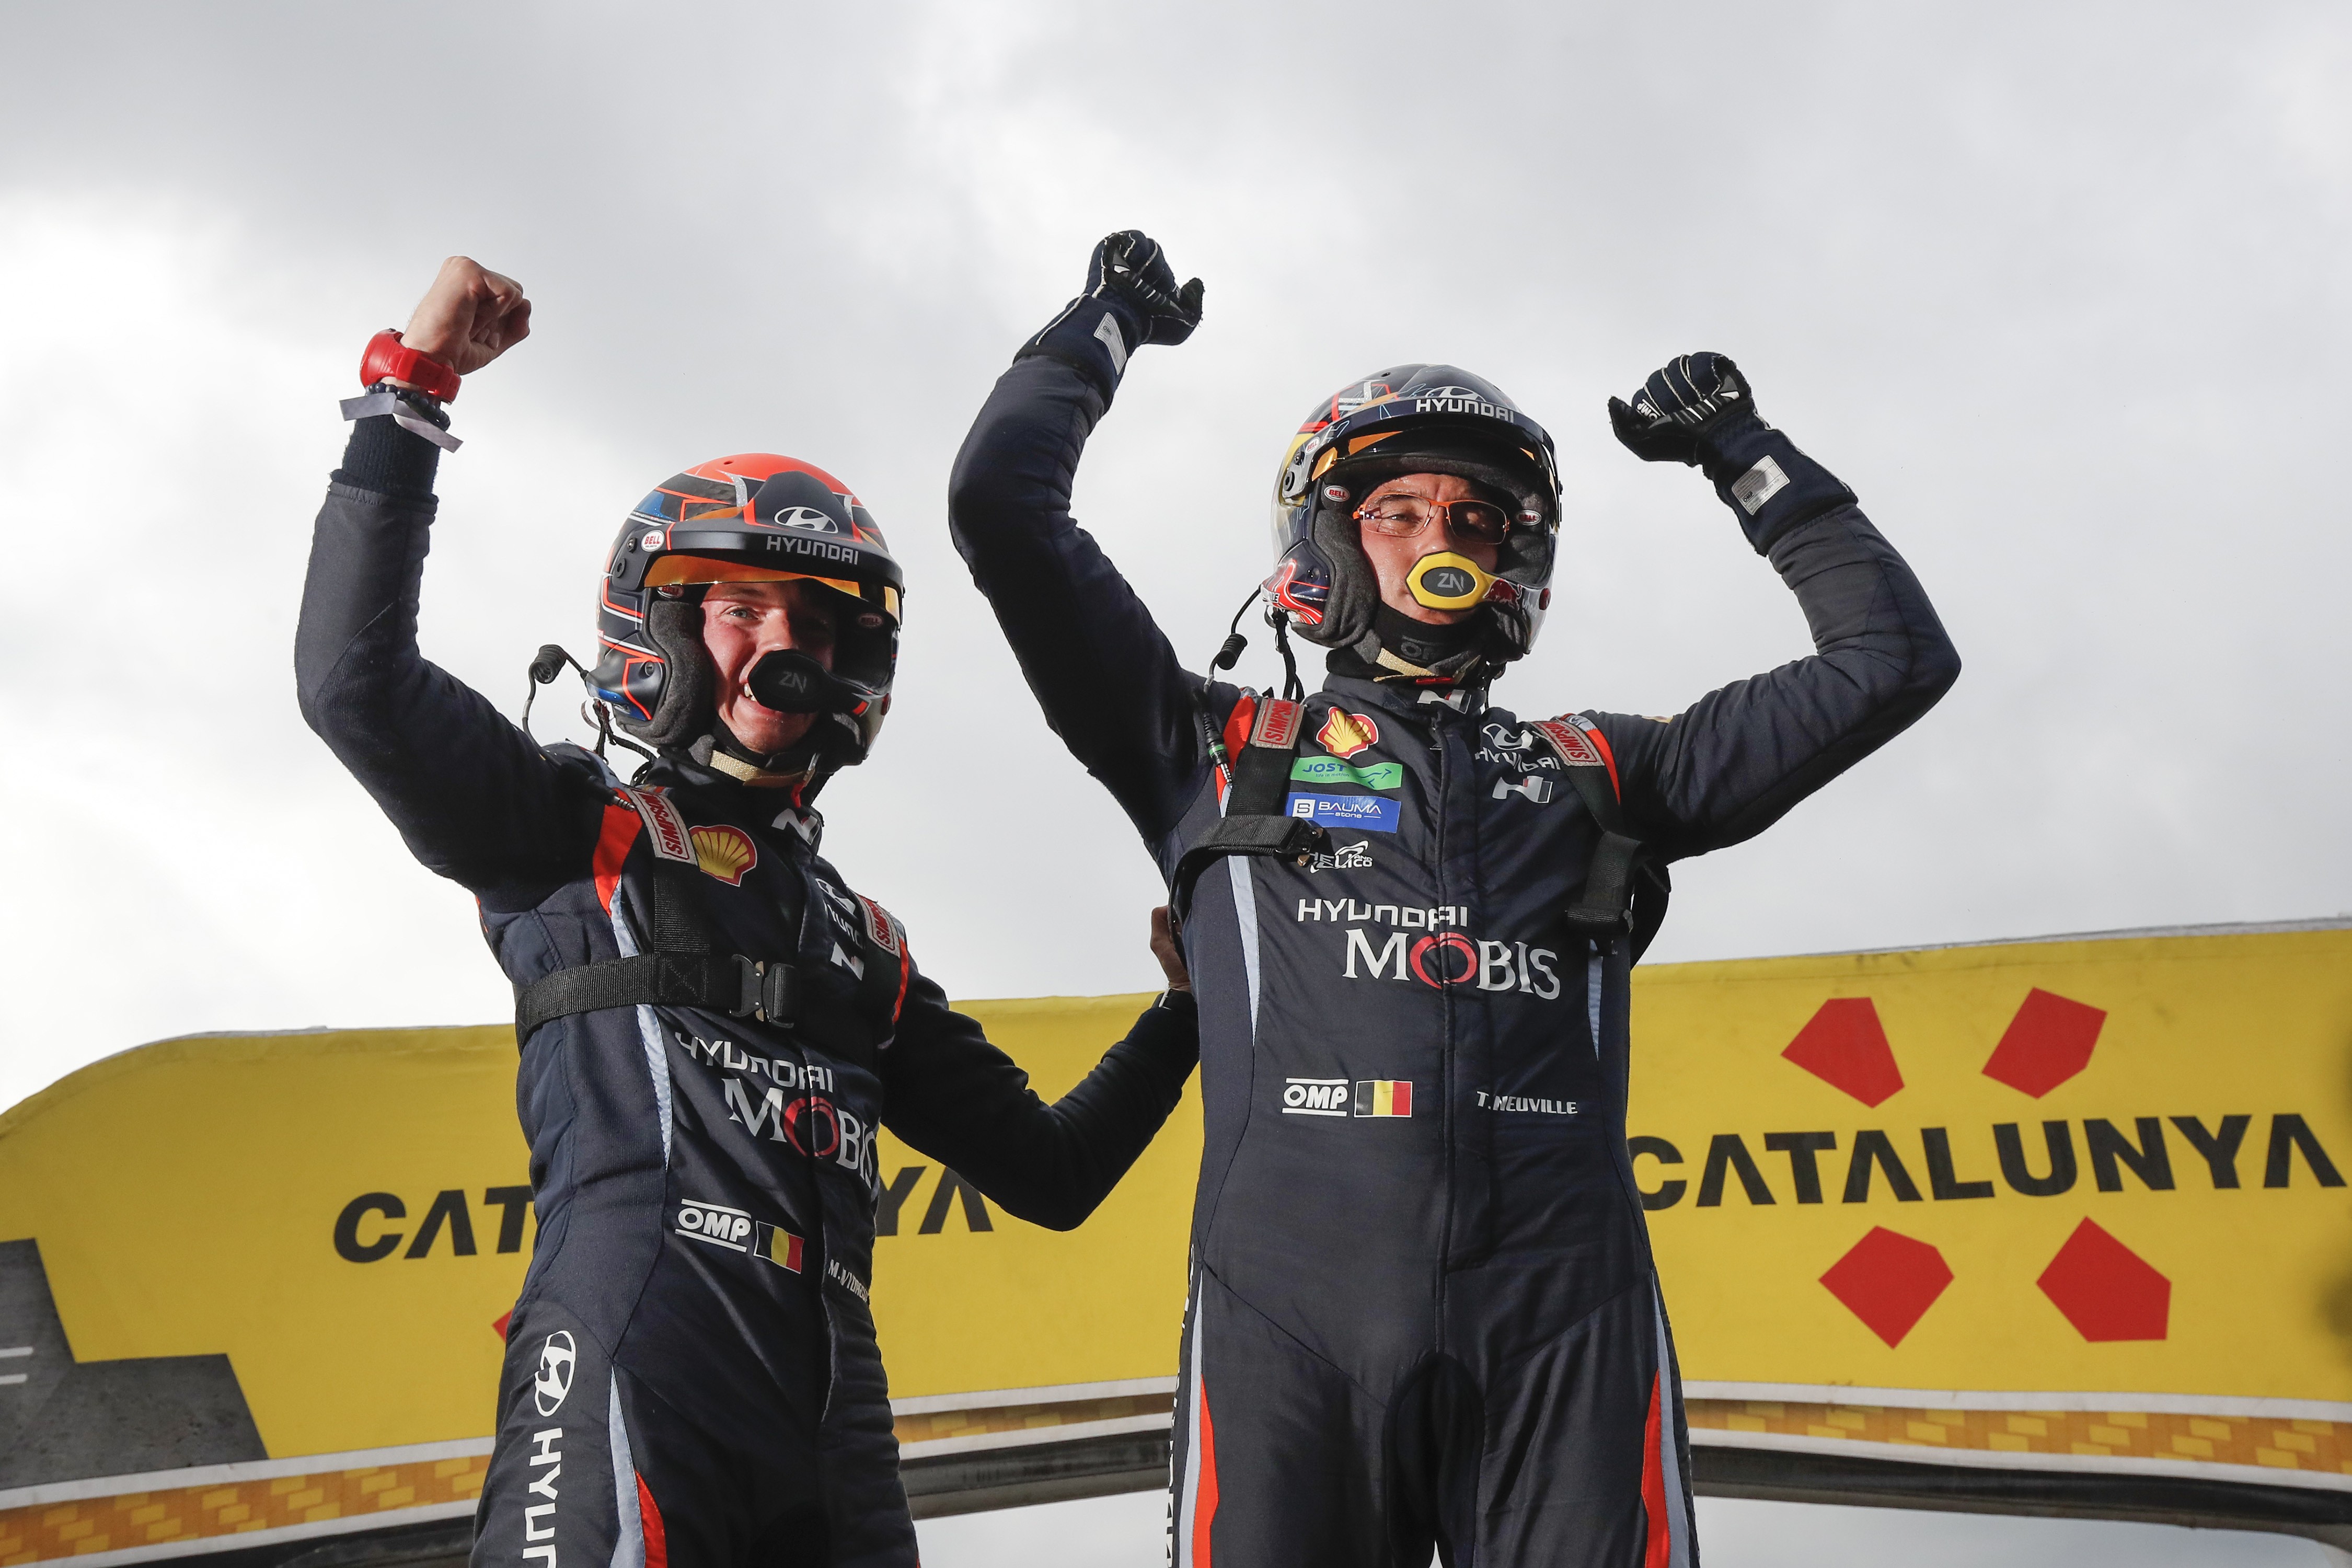 Νίκη για τη Hyundai στο Rally de Espana